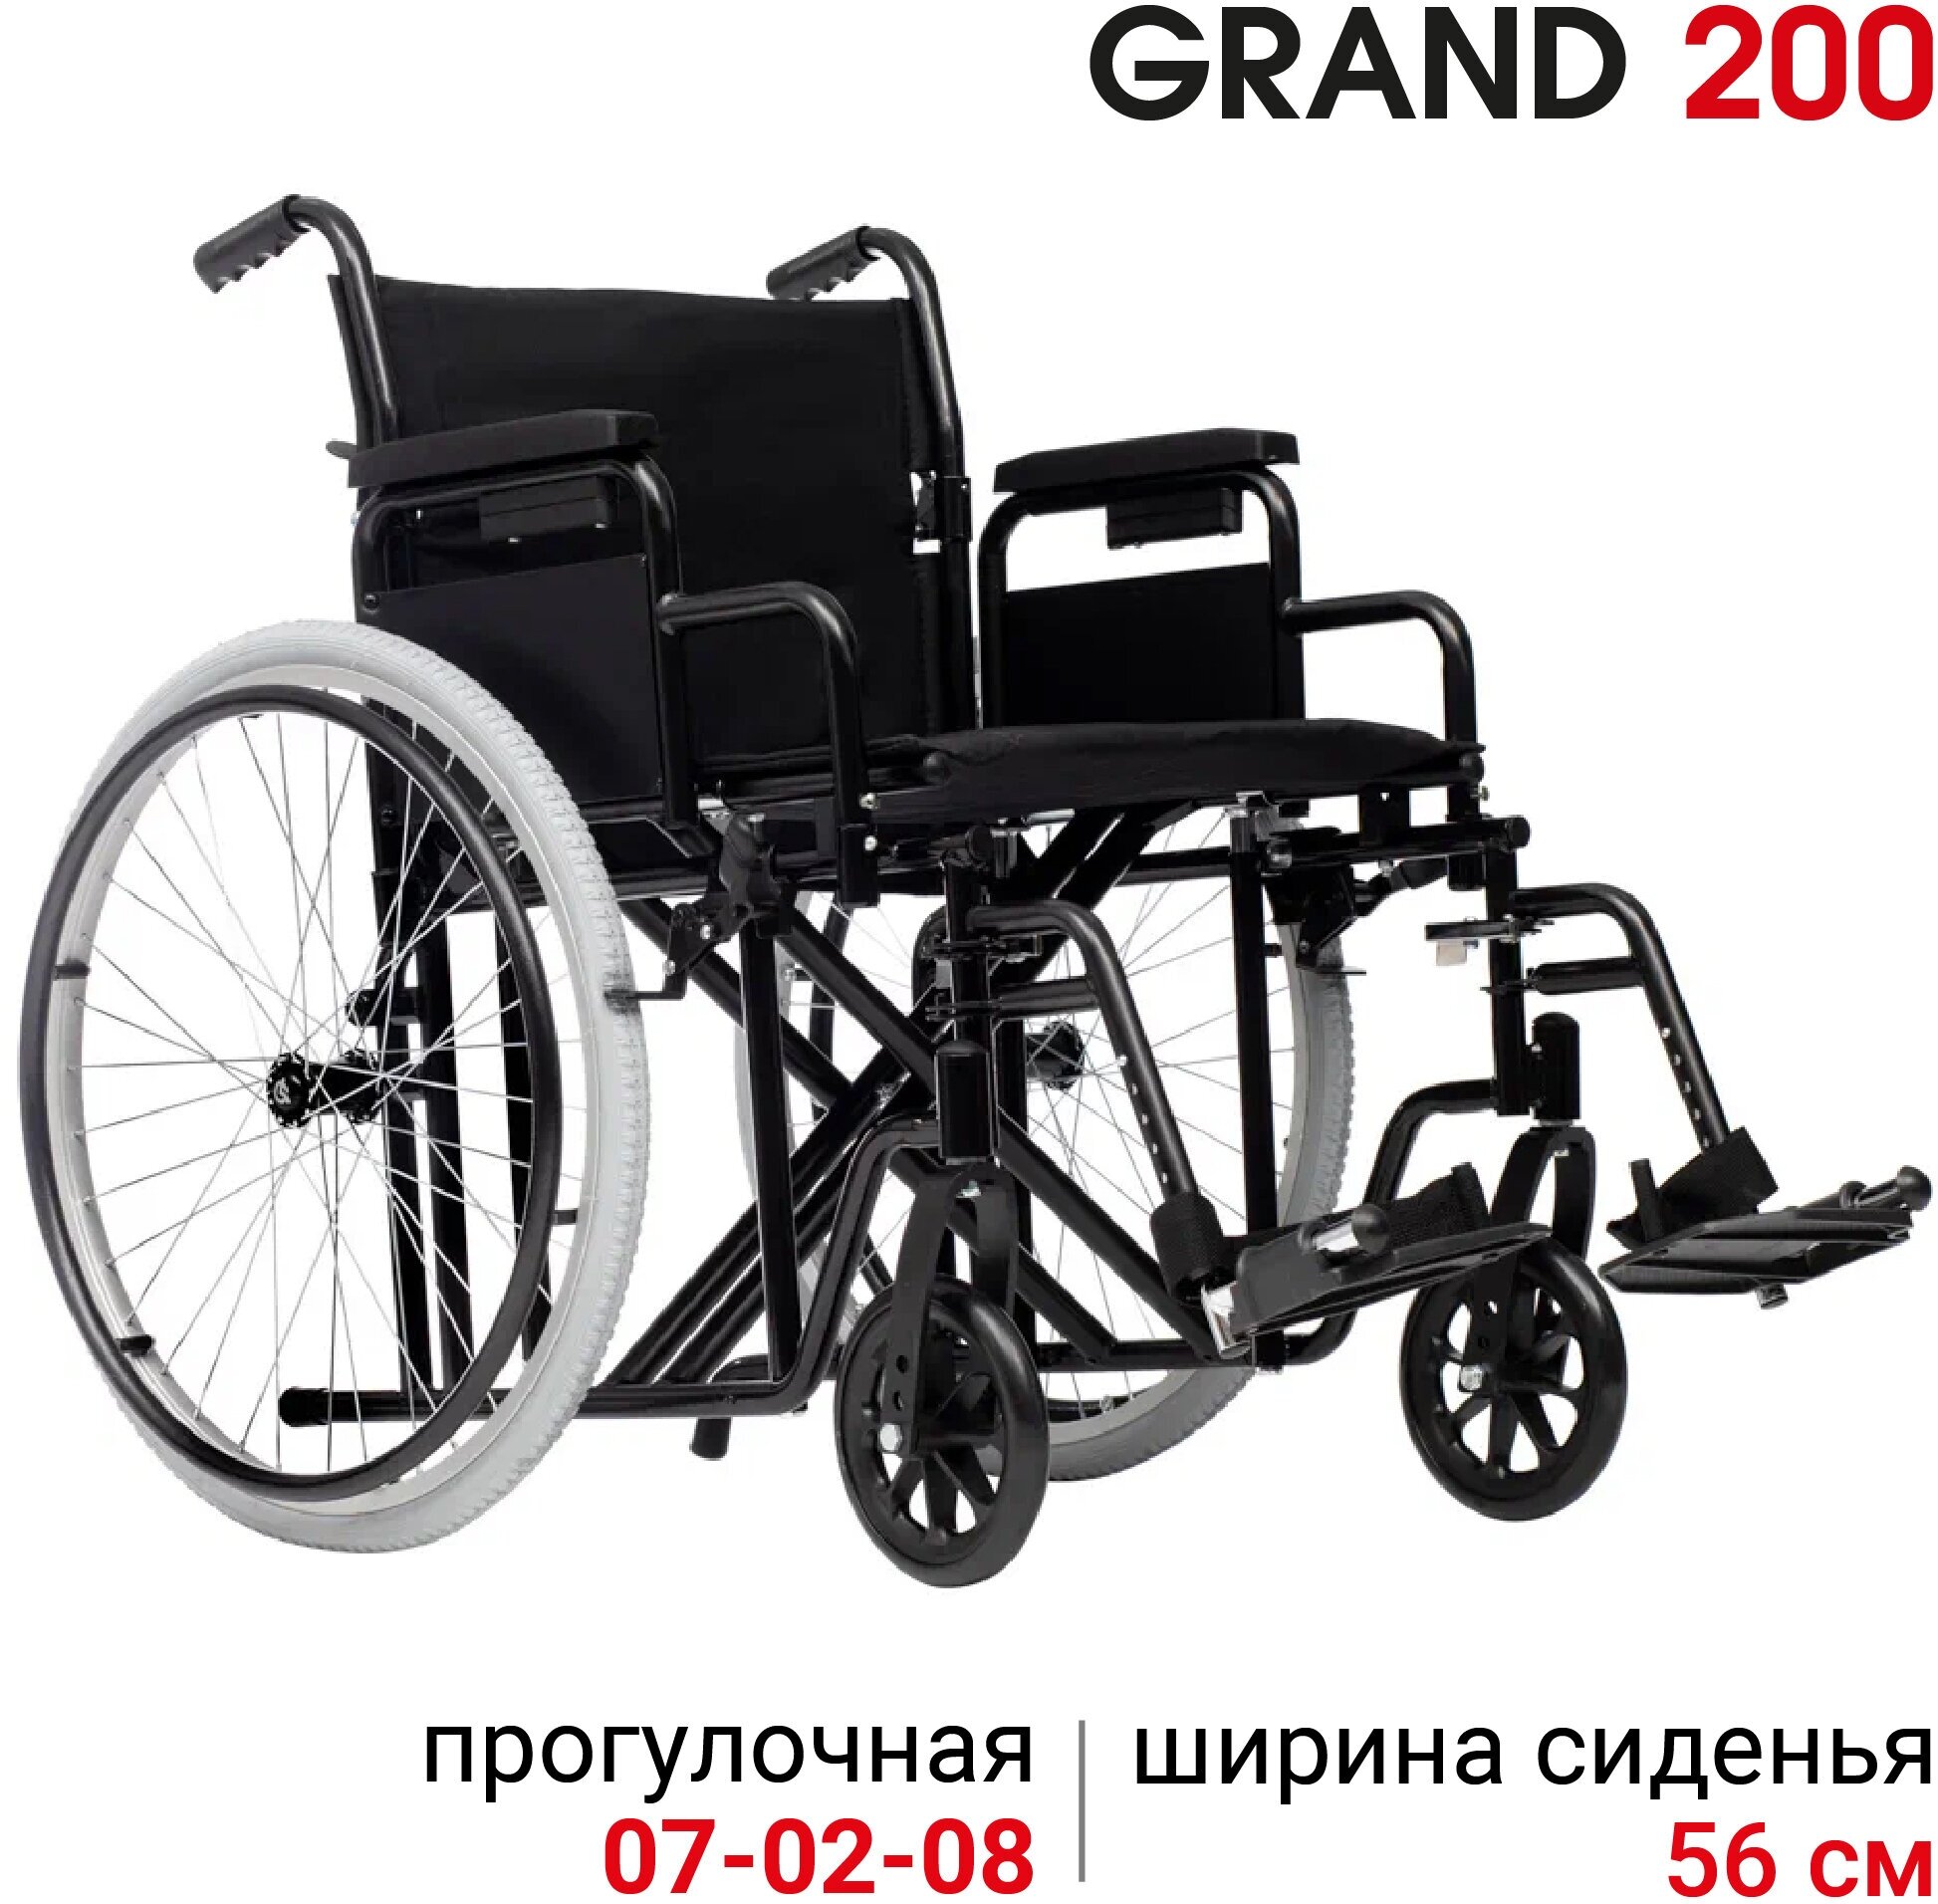 Кресло-коляска инвалидная механическая повышенной грузоподъемности Ortonica Trend 25/Grand 200 ширина сиденья 56 см передние литые колеса задние пневматические